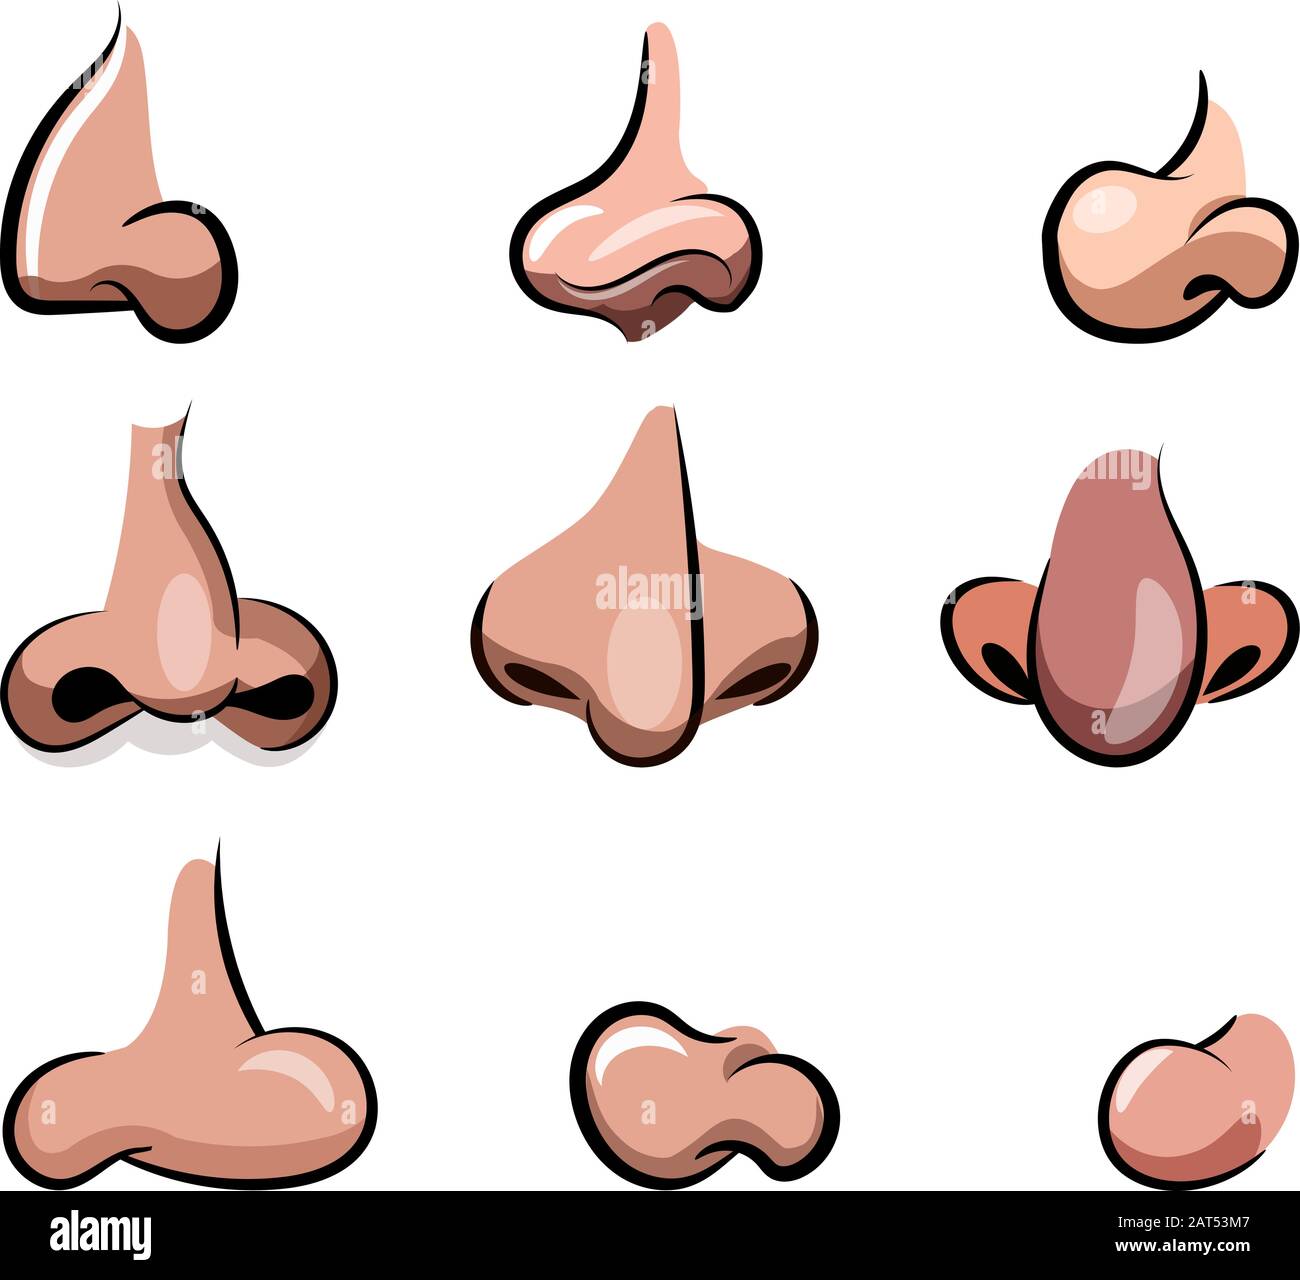 Cartoon-Set mit Vektor-Nase. Verschiedene Nasen für Zeichentrickfilme mit verschiedenen Größen, Nasenseiten und Farben. Requisiten für eine Zeichentrickfigur. Stock Vektor